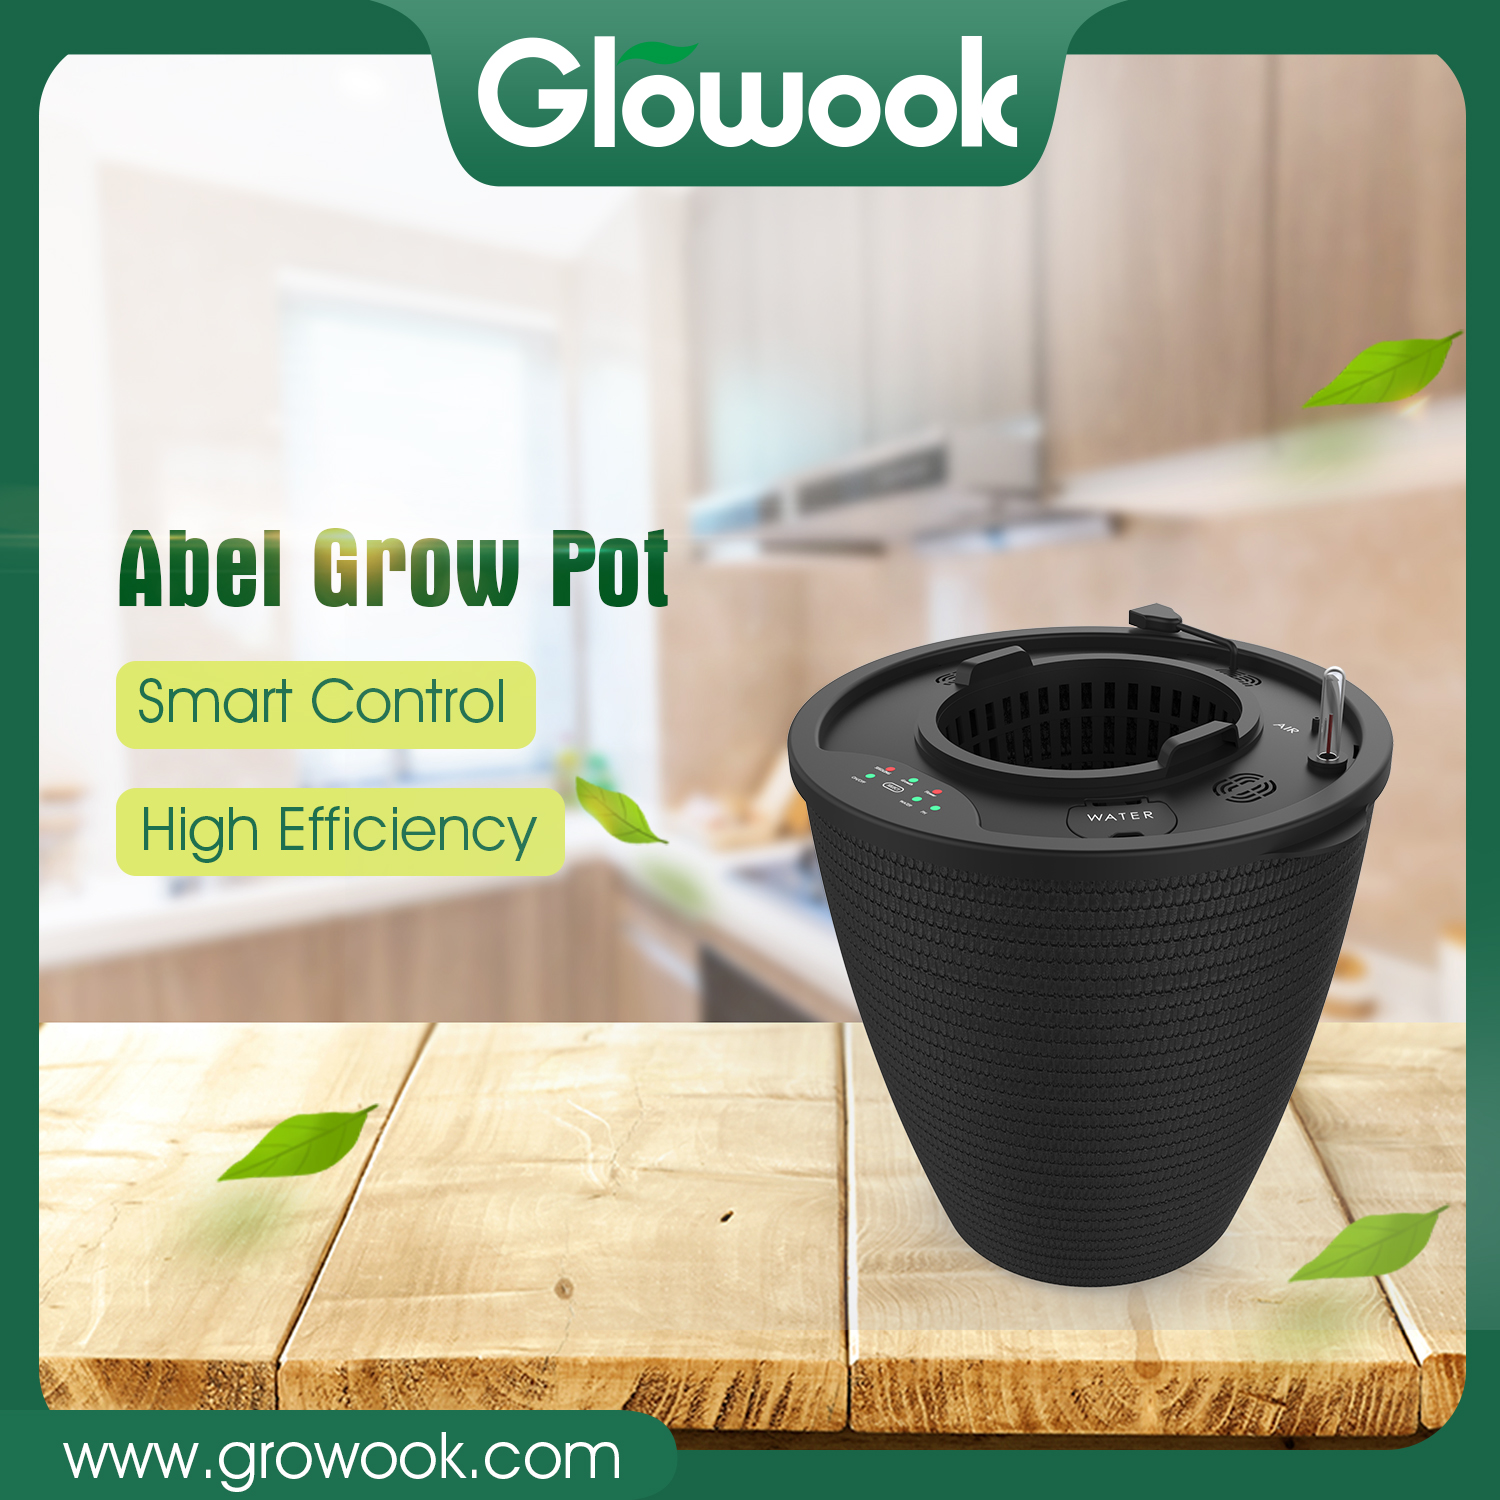 Abel Grow Pot